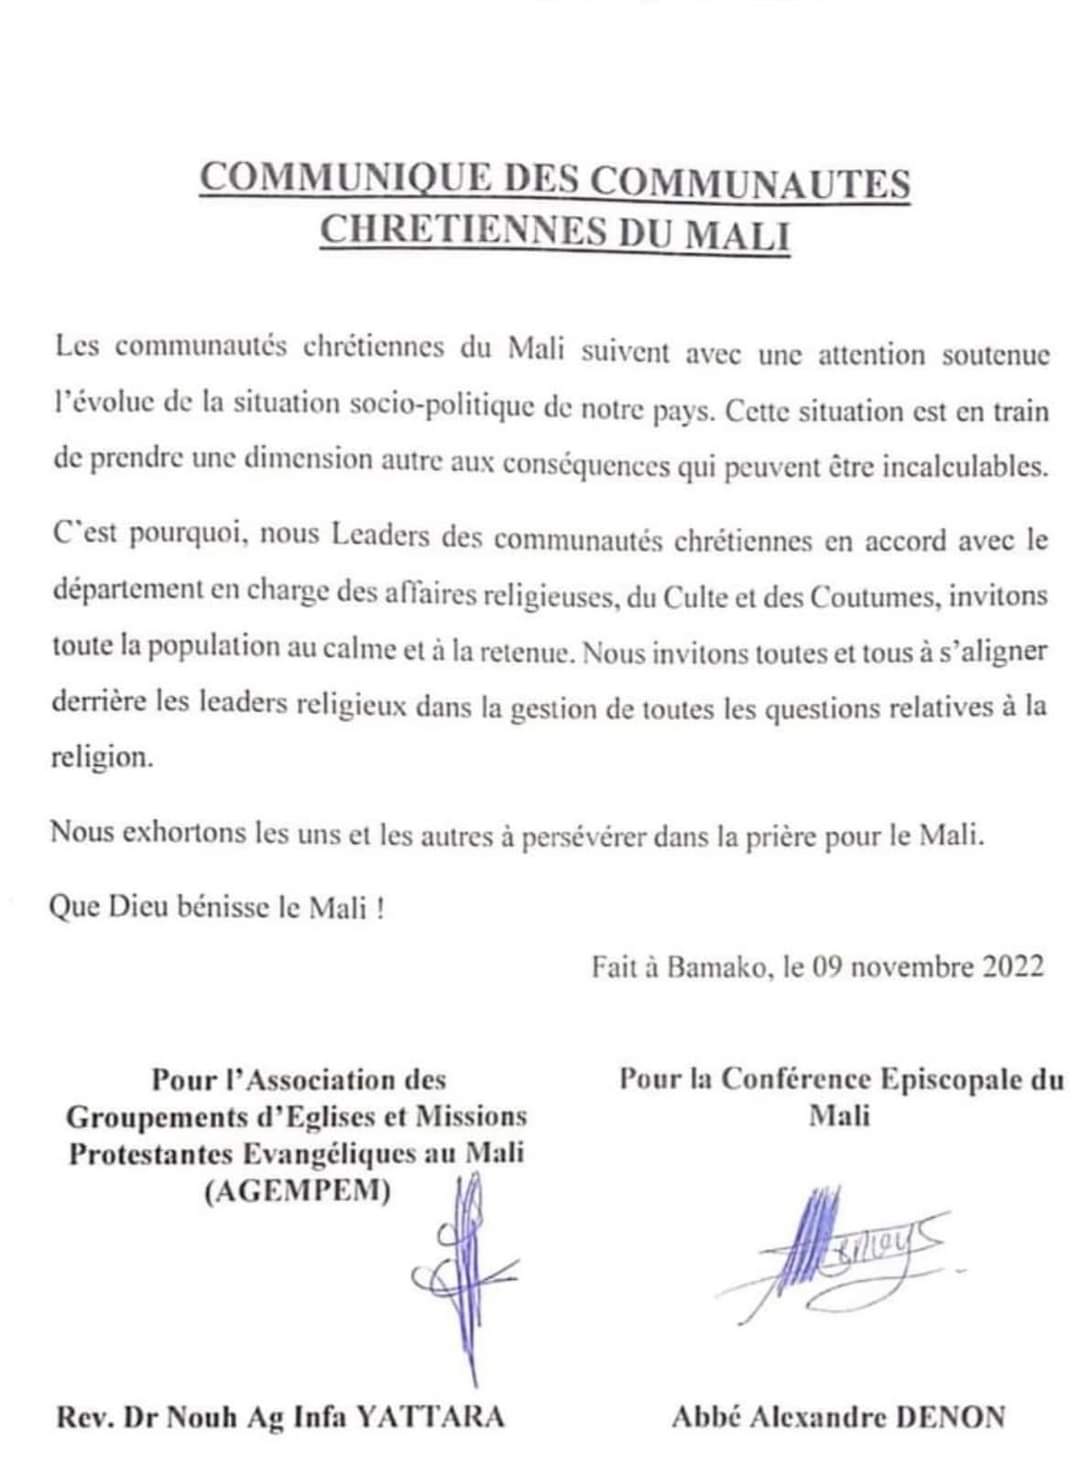 Urgent: COMMUNIQUE DES COMMUNAUTES<br>CHRETIENNES DU MALI.